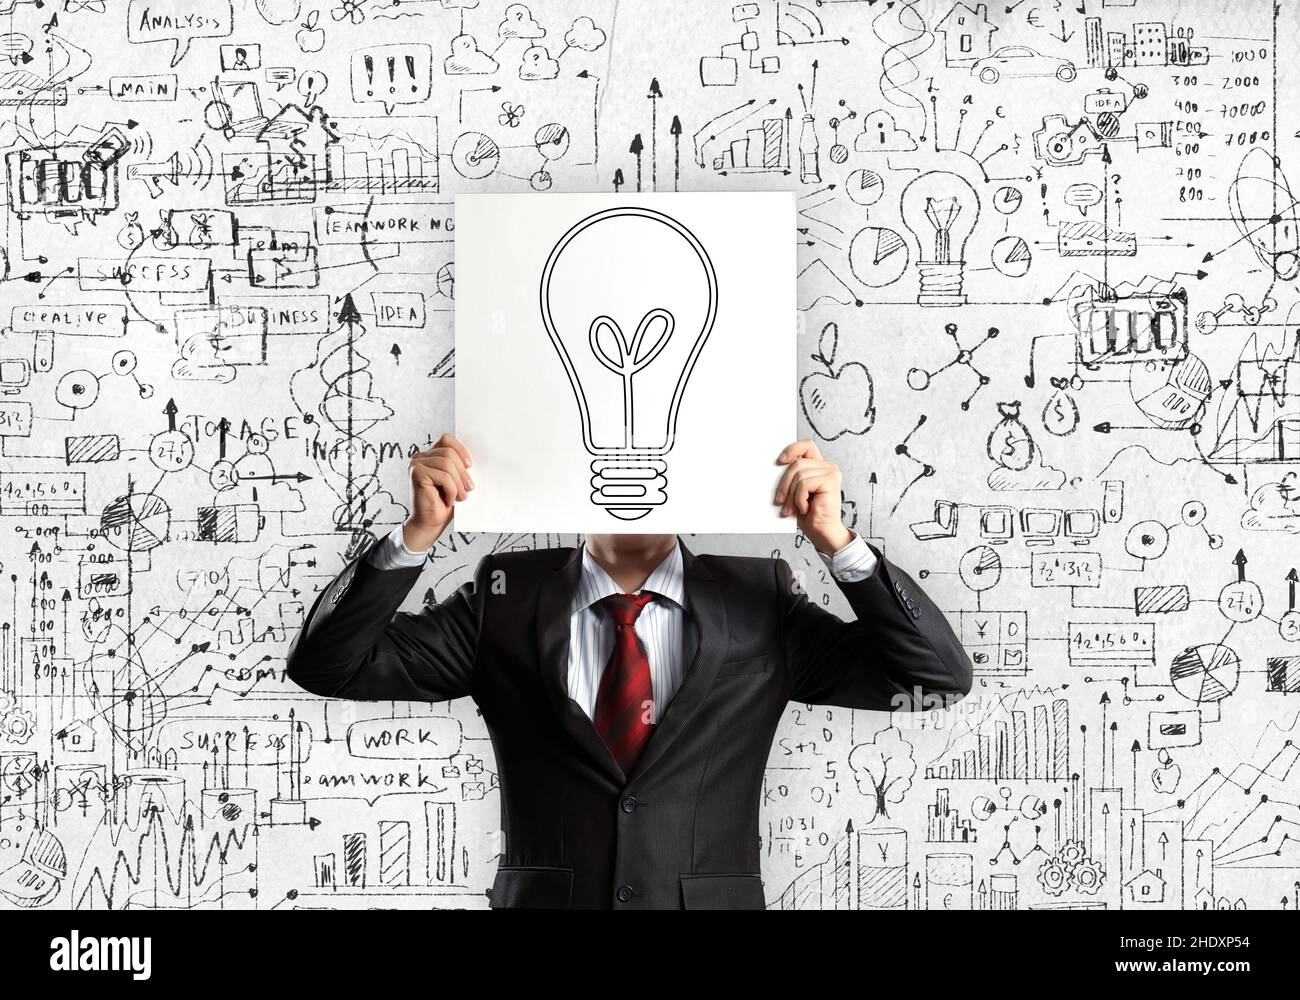 affaires, idées, gestion, entreprise, negocios,brainstorming, idée, gestion Banque D'Images